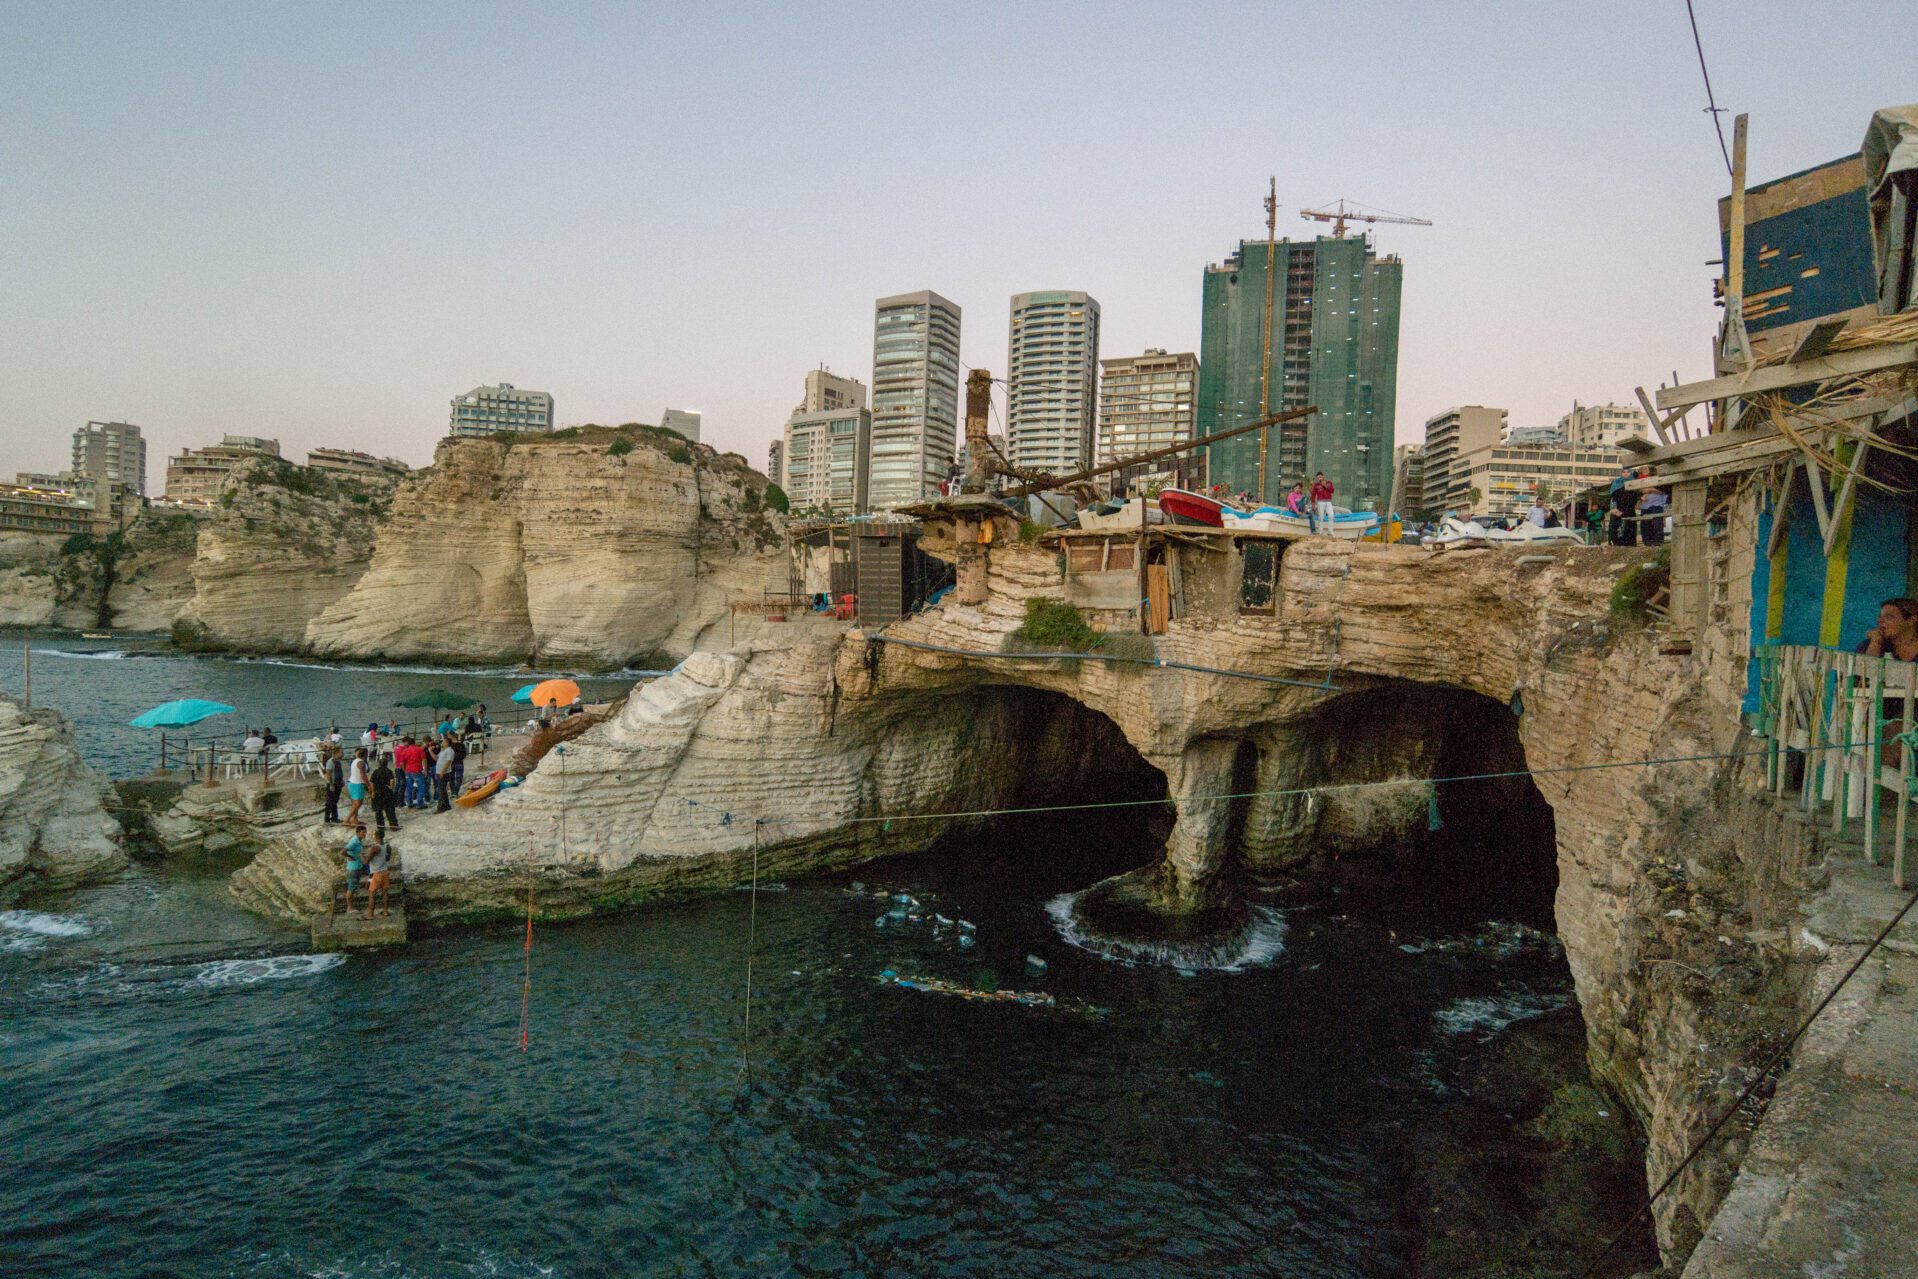 Libanon reisinformatie voor jouw vakantie